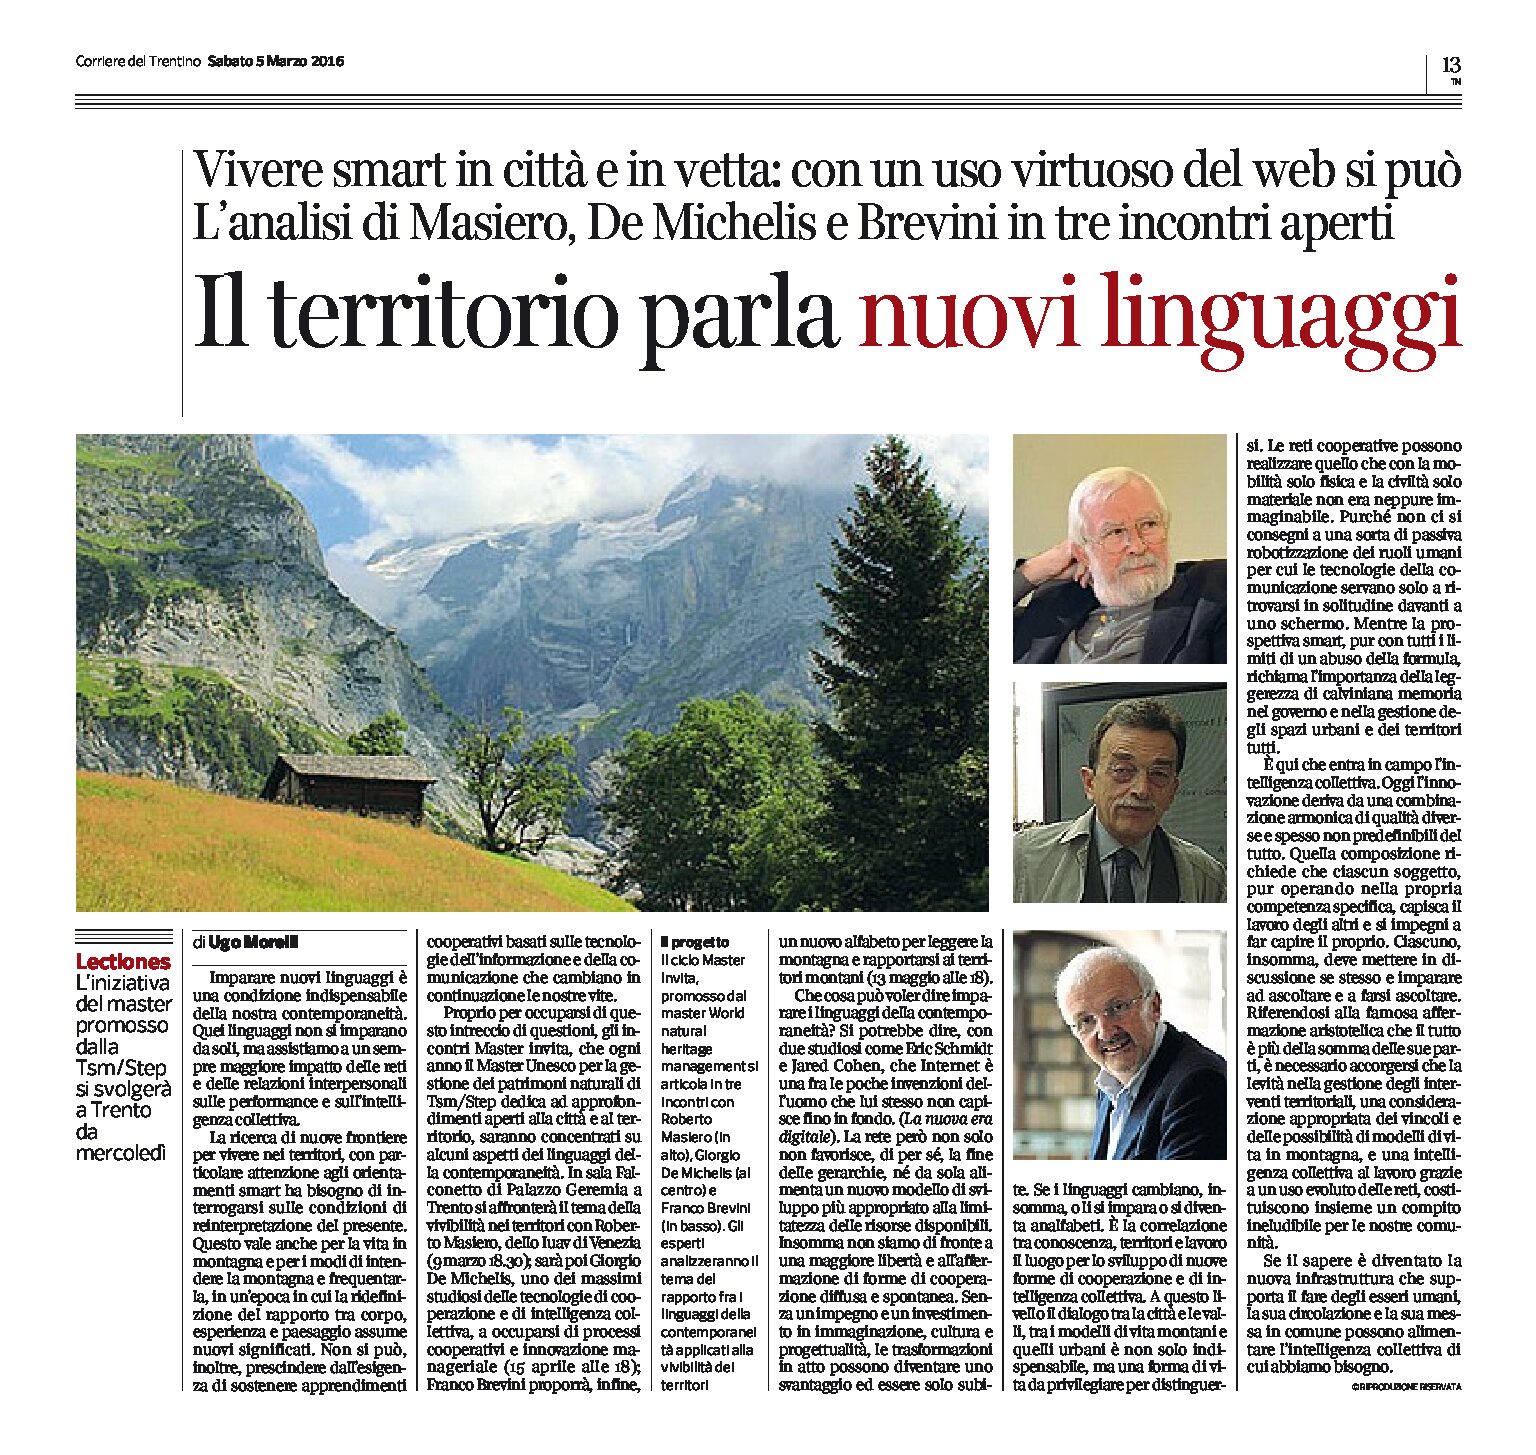 Trento, Tsm/Step: 3 incontri aperti. Il territorio parla nuovi linguaggi